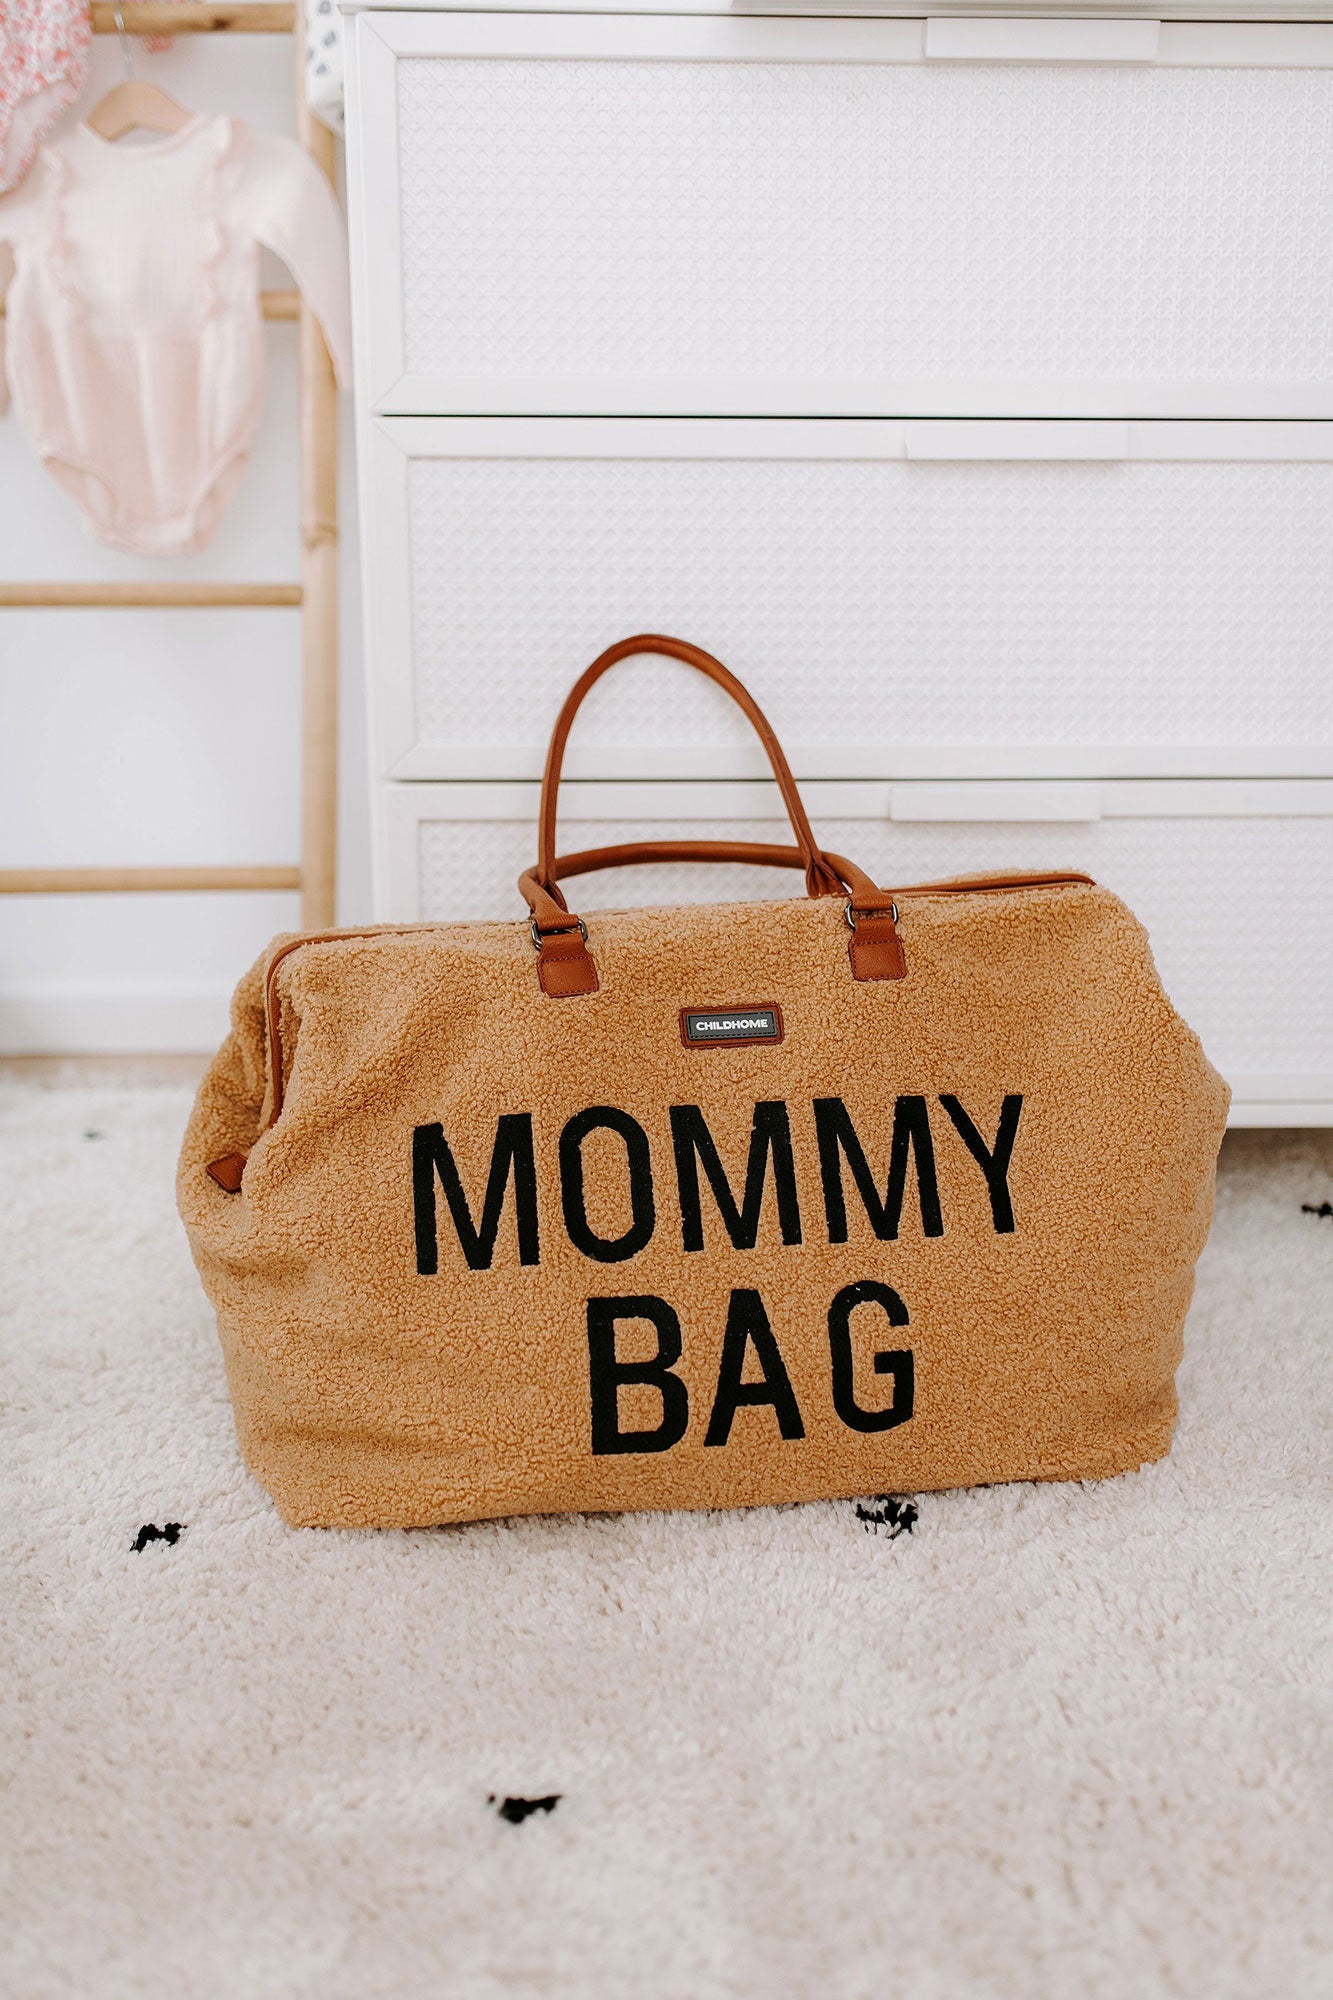 Mommy Bag Big Teddy Beige - ChildHome